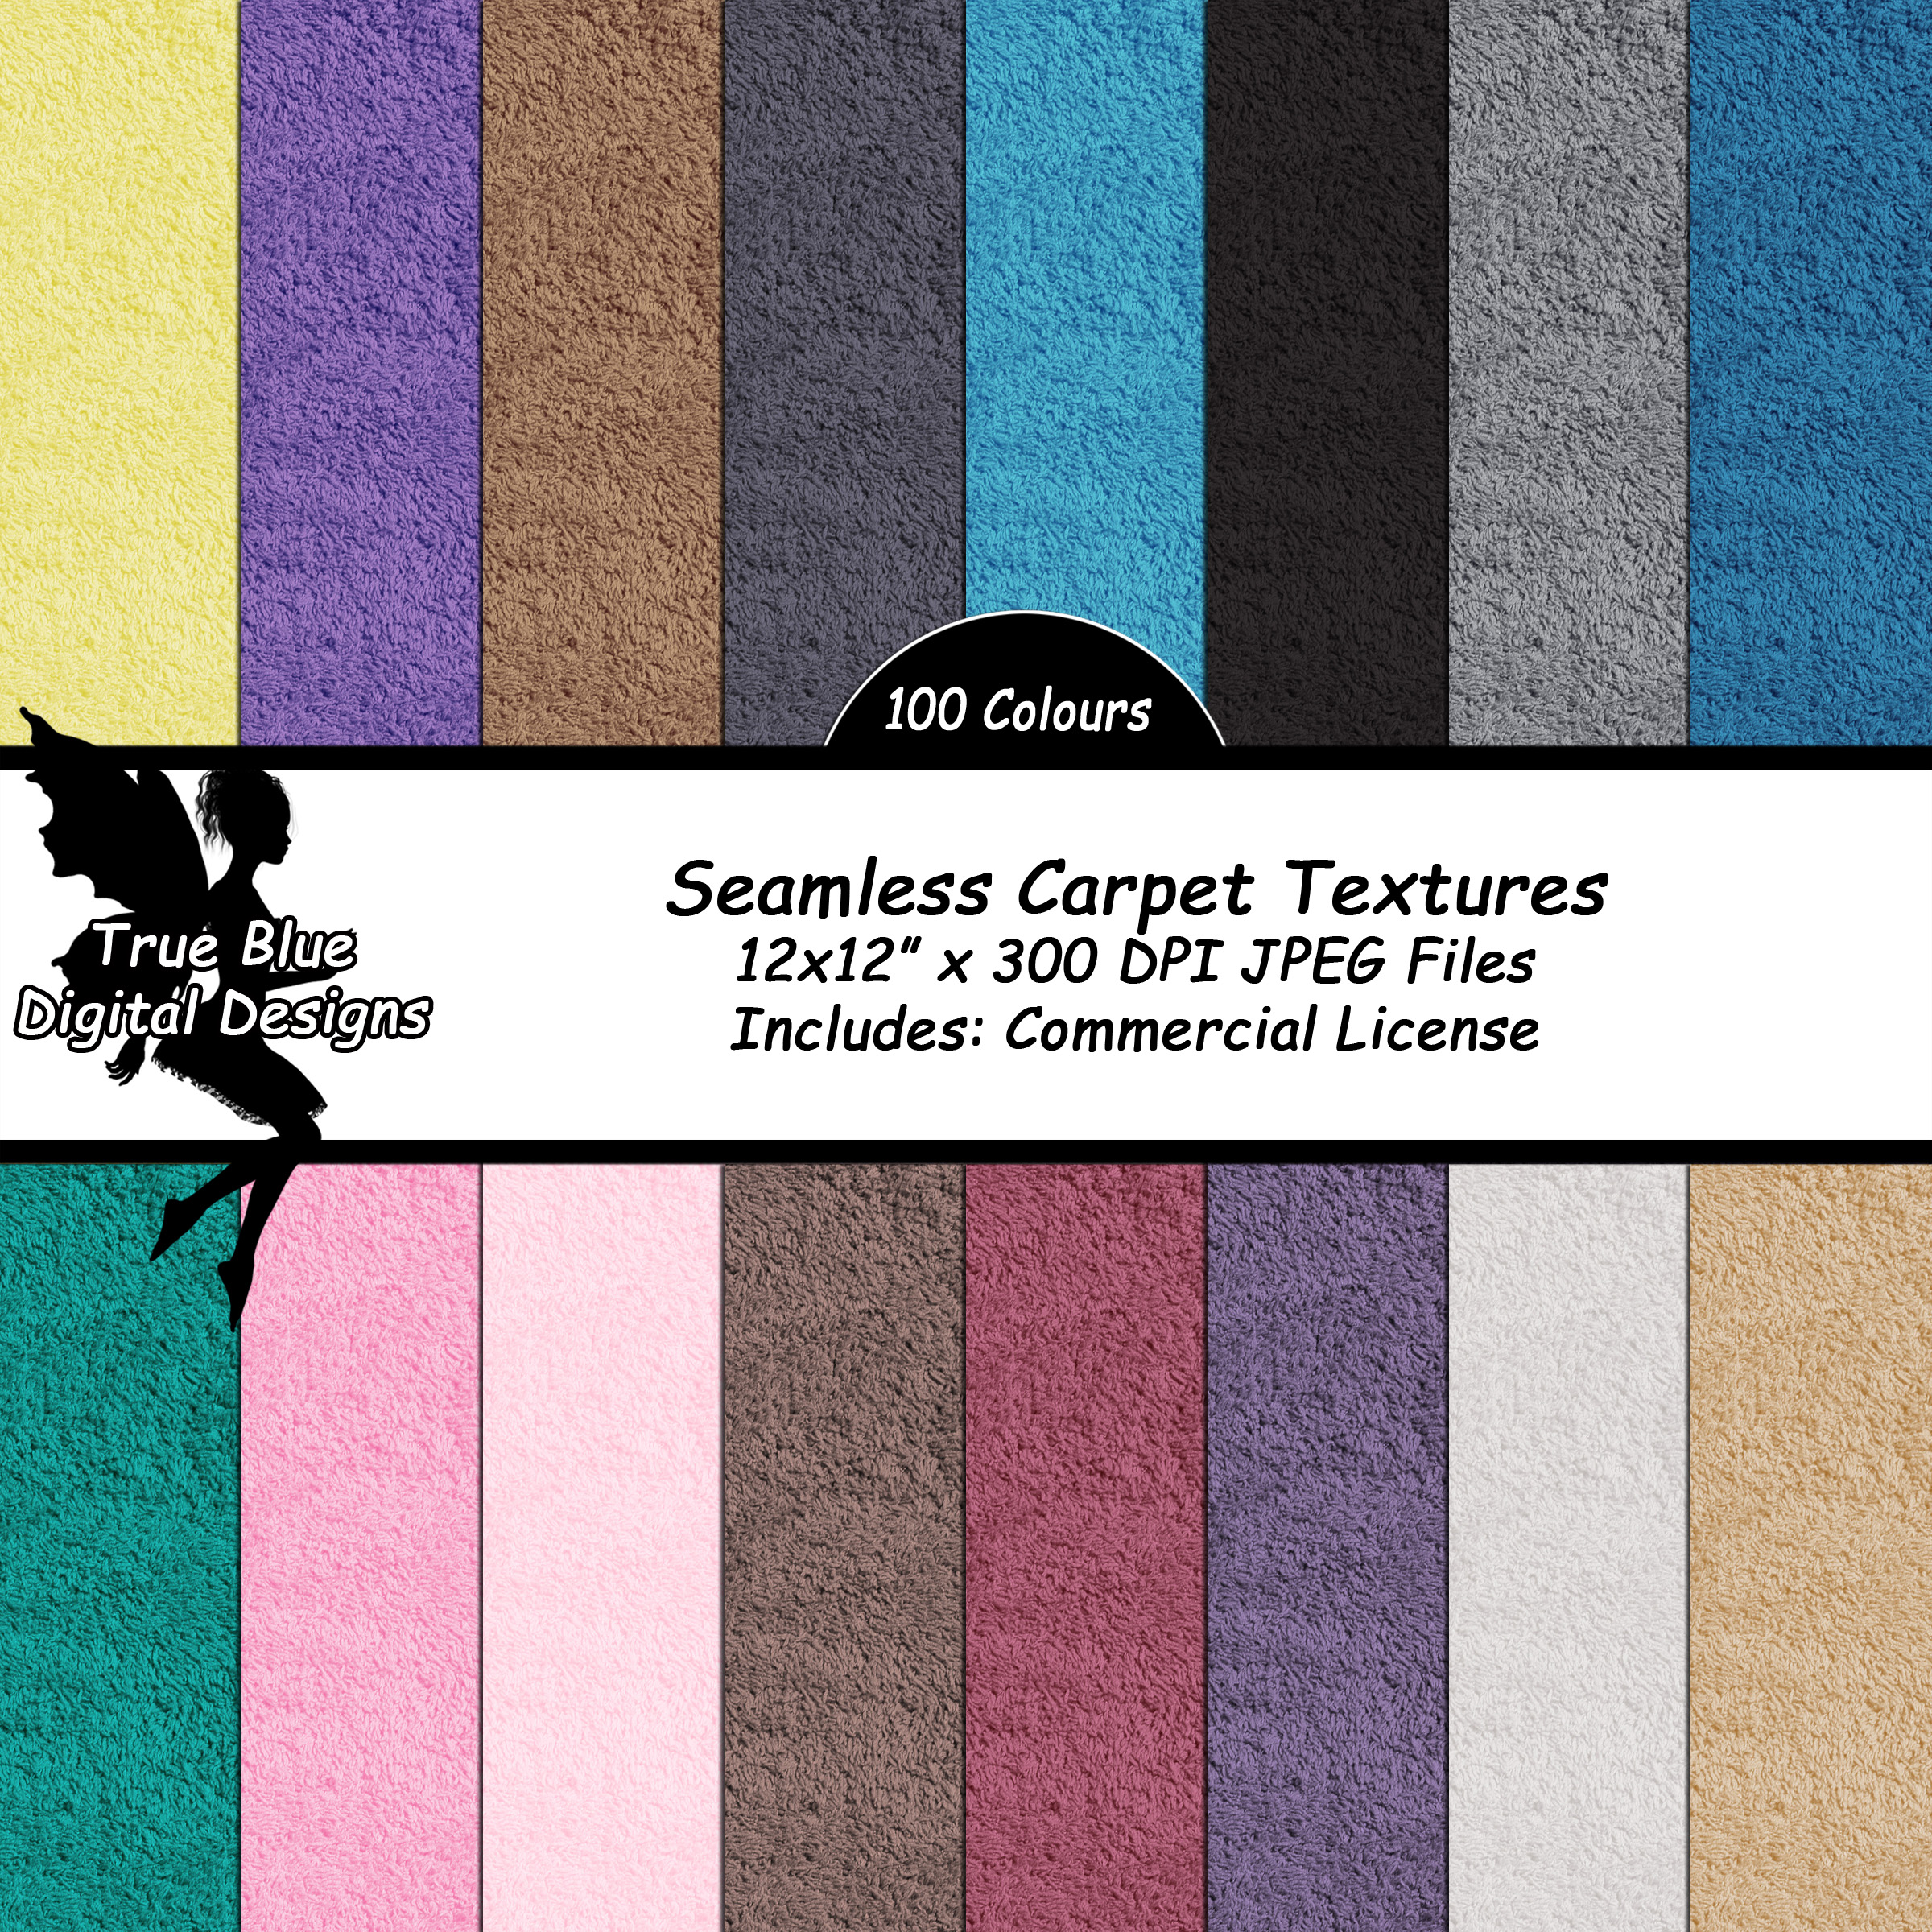 100 Seamless Carpet Textures